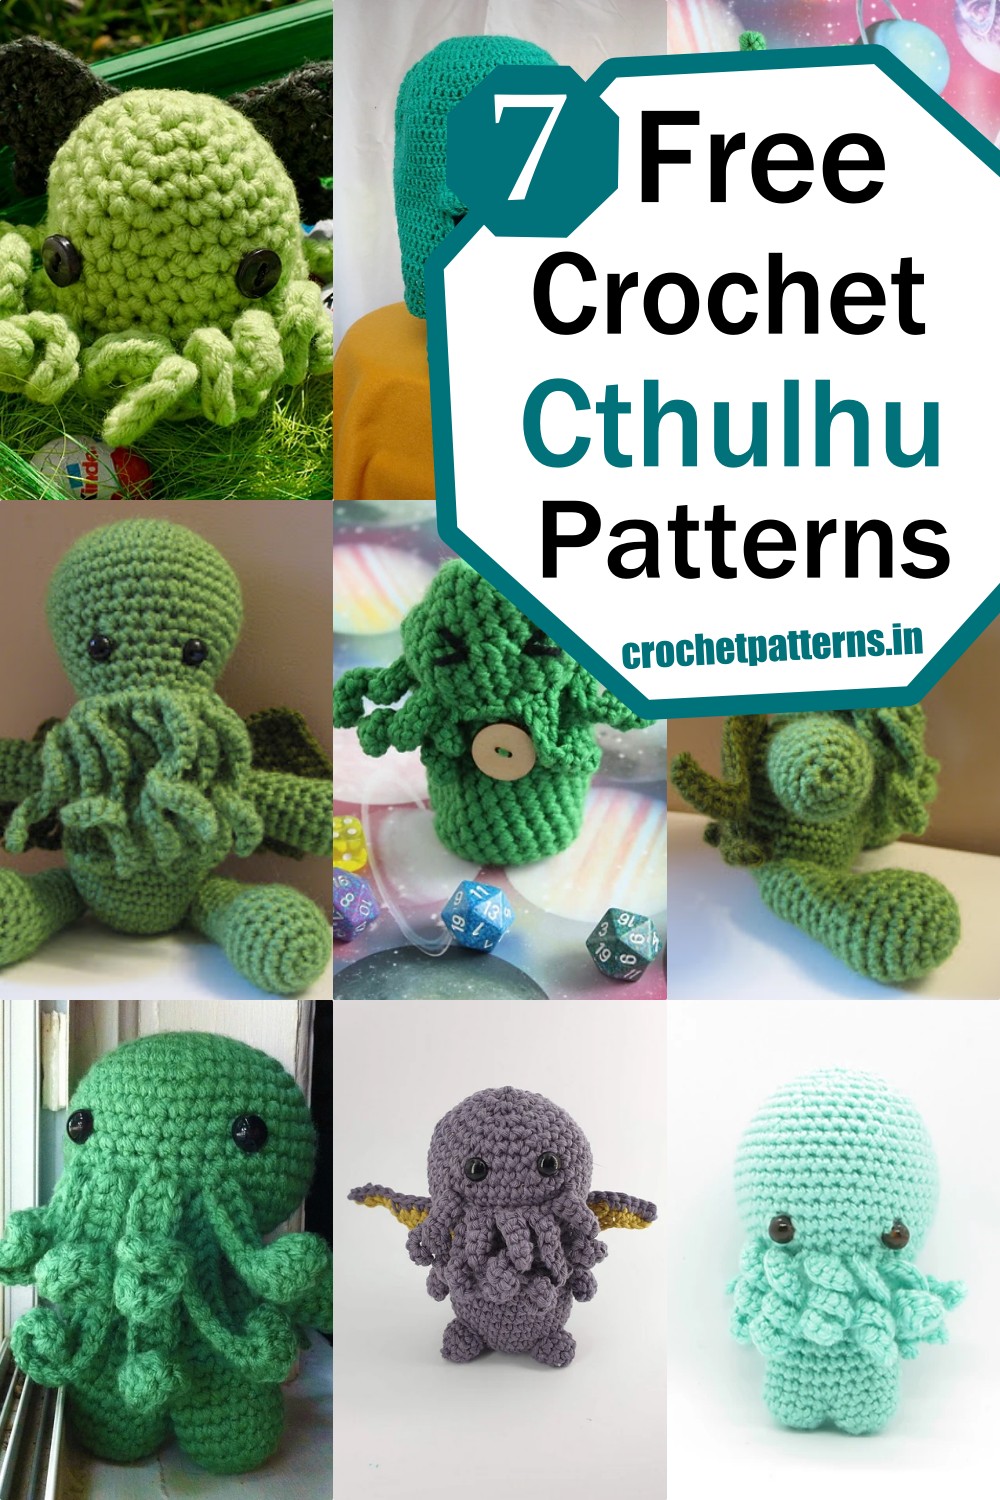 7 Crochet Cthulhu Patterns